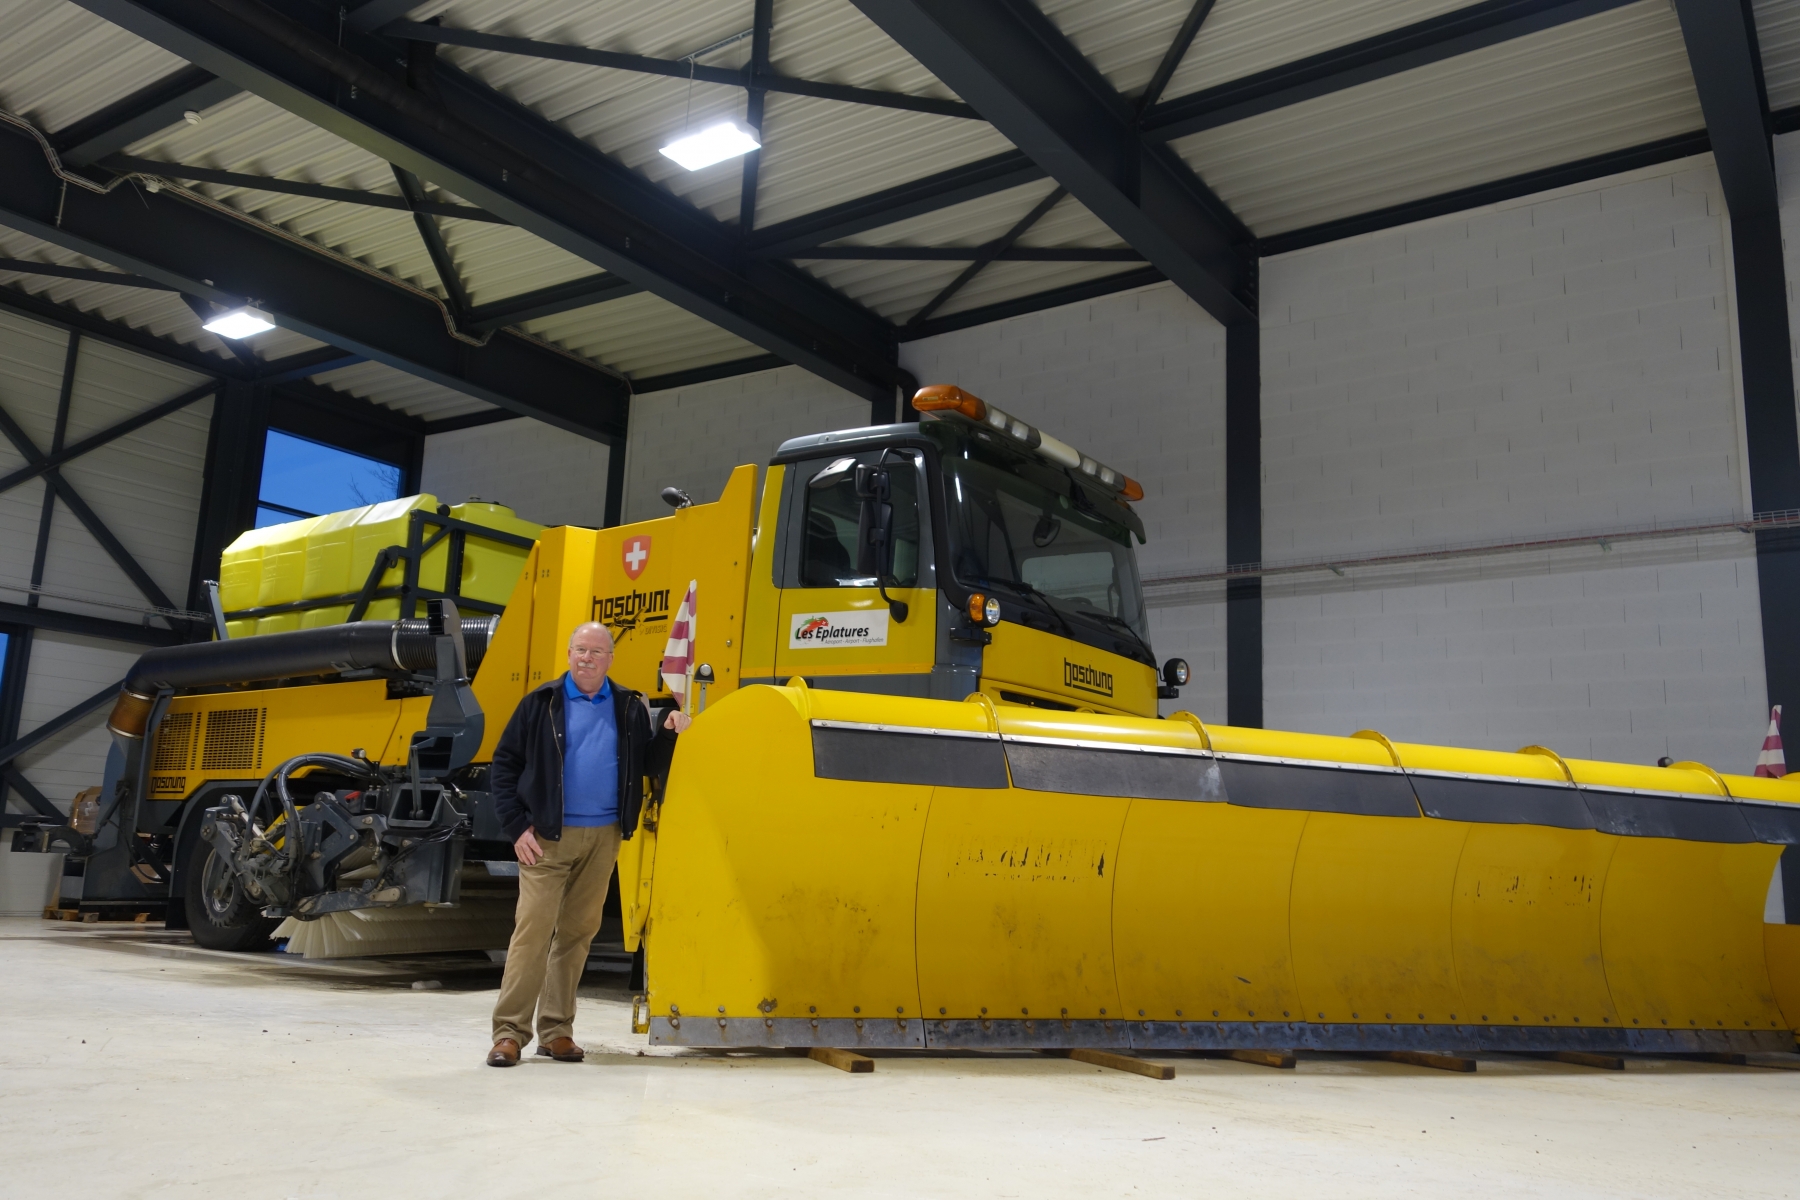 Le chasse-neige de 36 tonnes a été spécialement modifié pour les besoins de l'aéroport Chaux-de-Fonnier, dirigé par Simon Loichat.